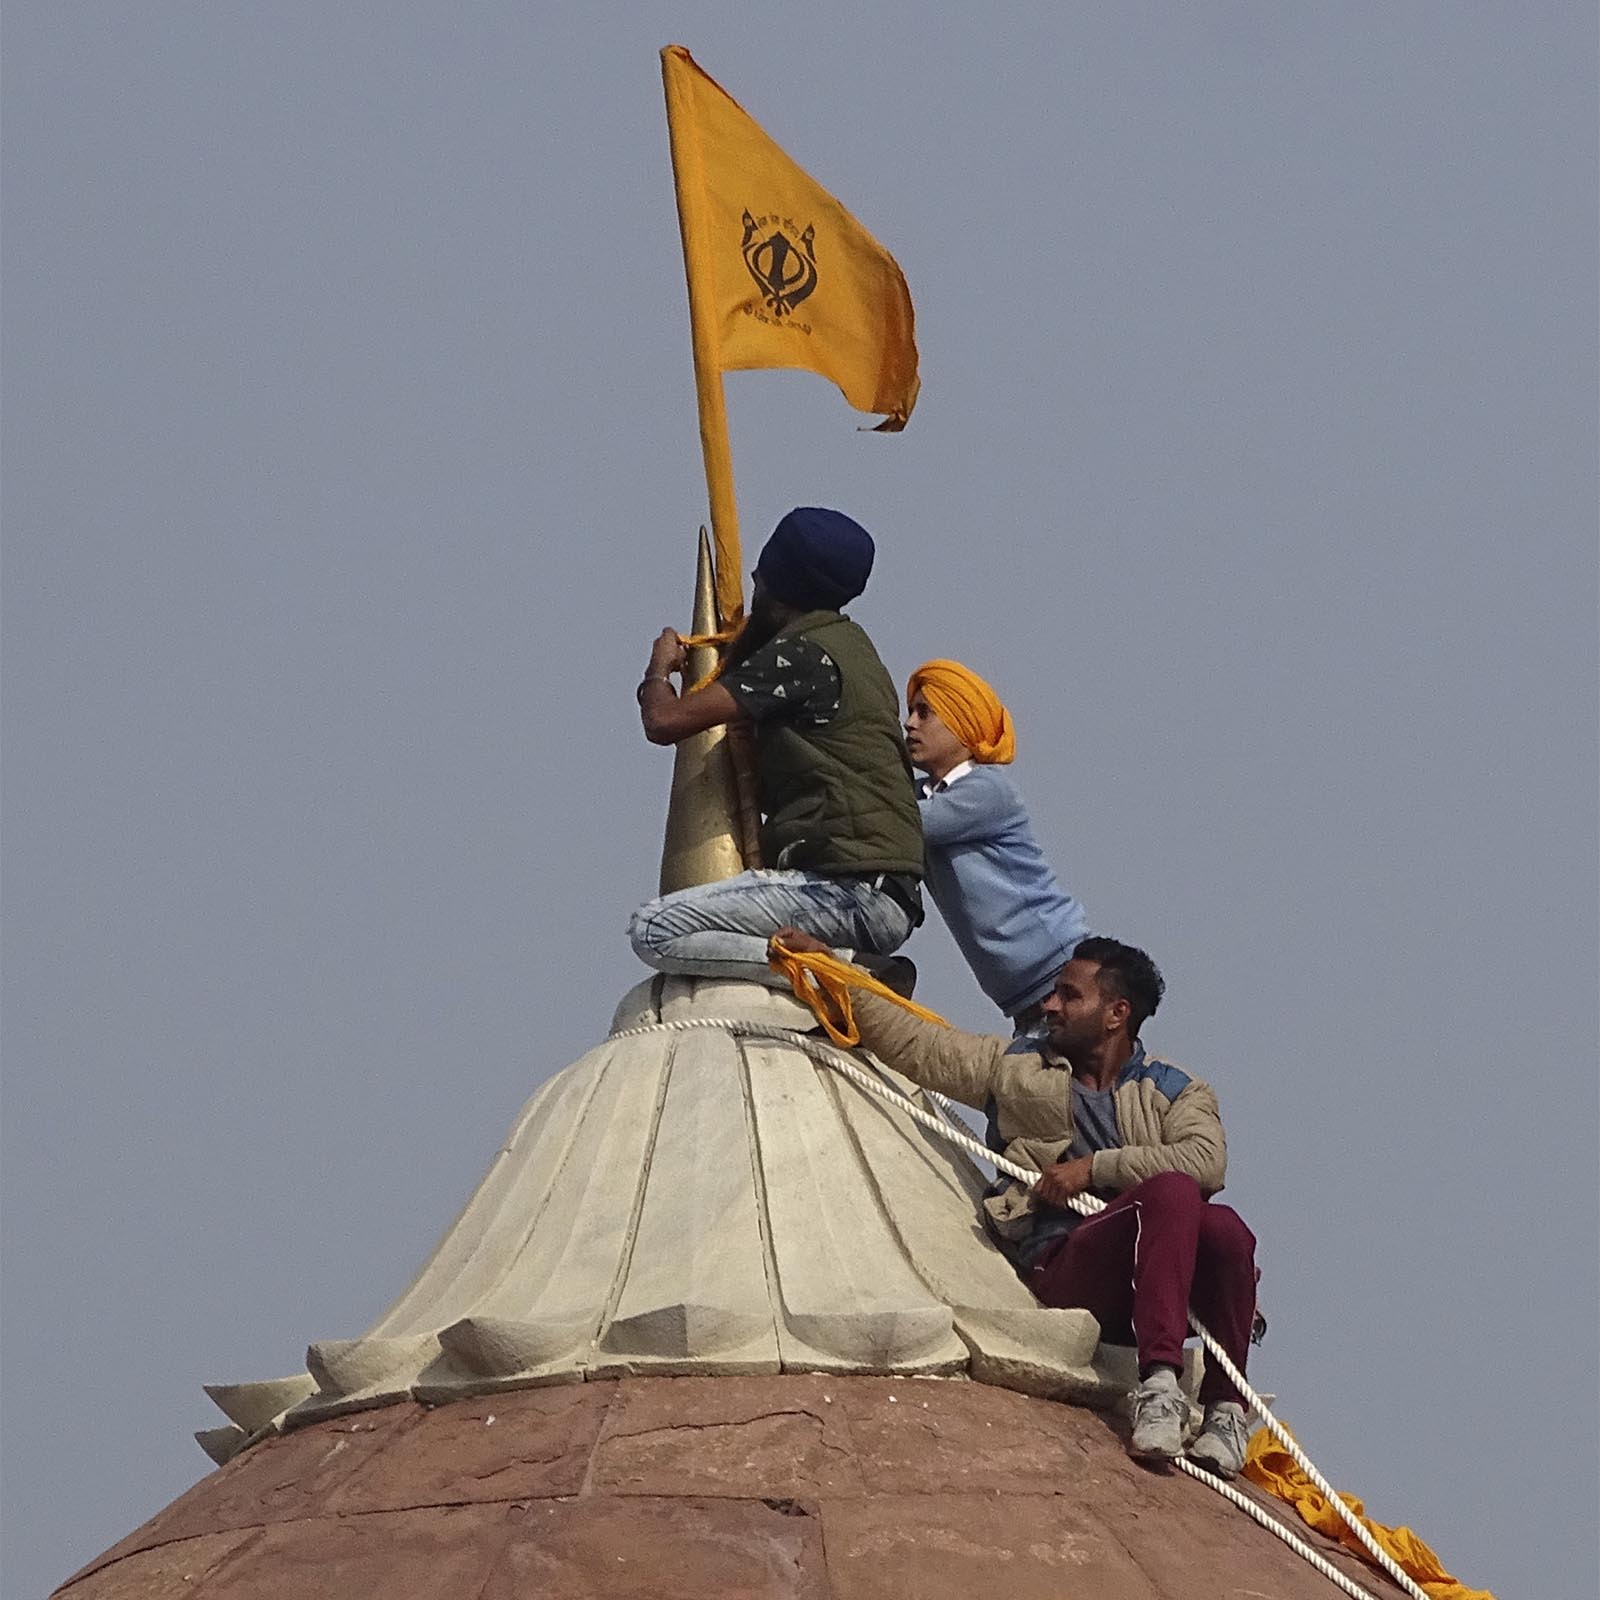 המוחים מניפים את דגל הסיקים בראש המצודה האדומה (צילום: AP Photo/Dinesh Joshi)